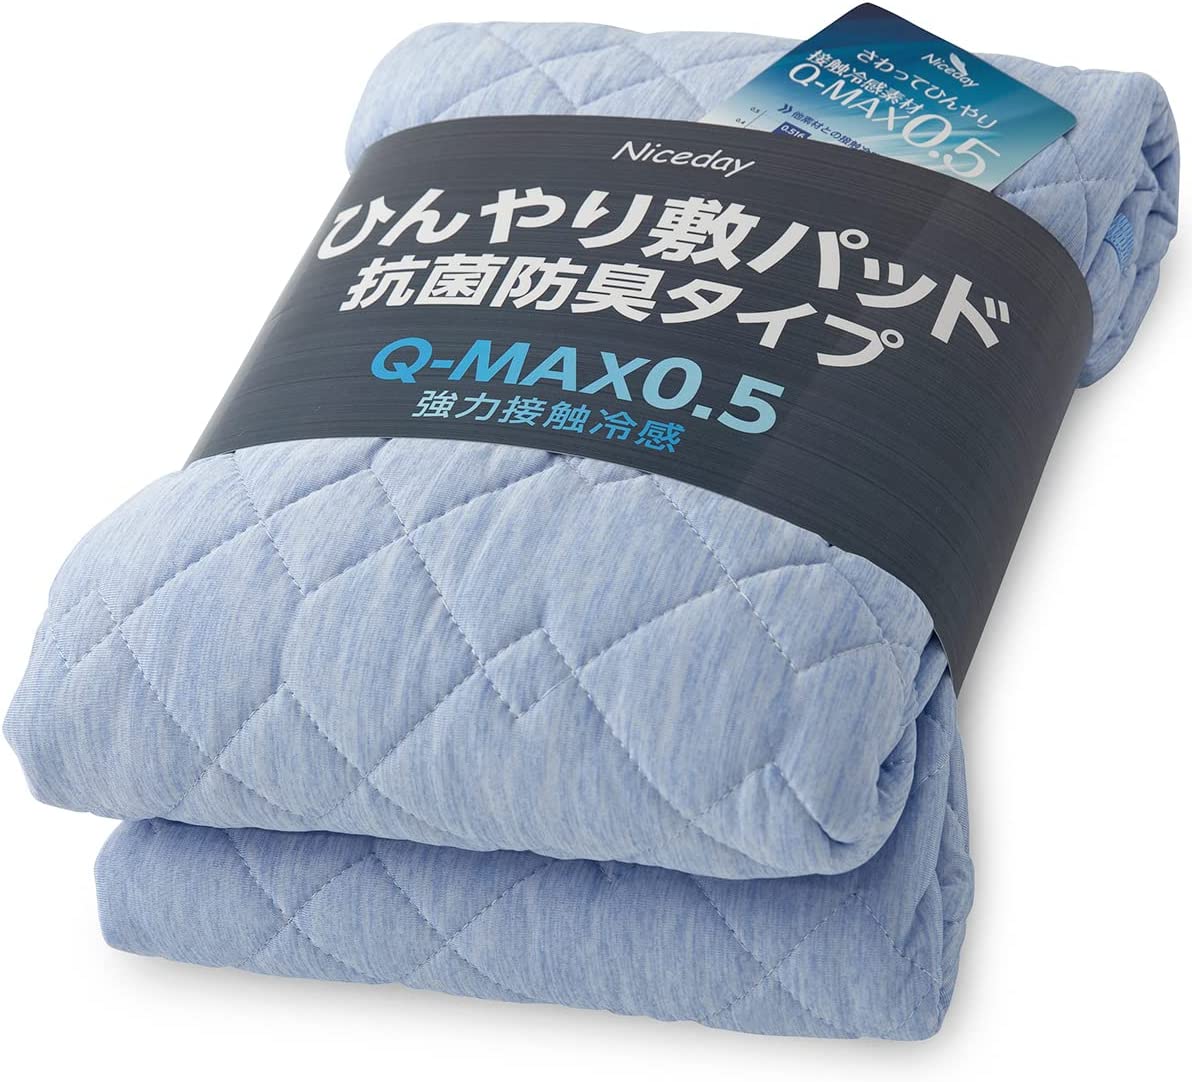 【日本代購】Niceday 涼爽 床墊 觸感清涼 Q-max0.542 可洗 褥墊 抗菌 防臭 雙面可用